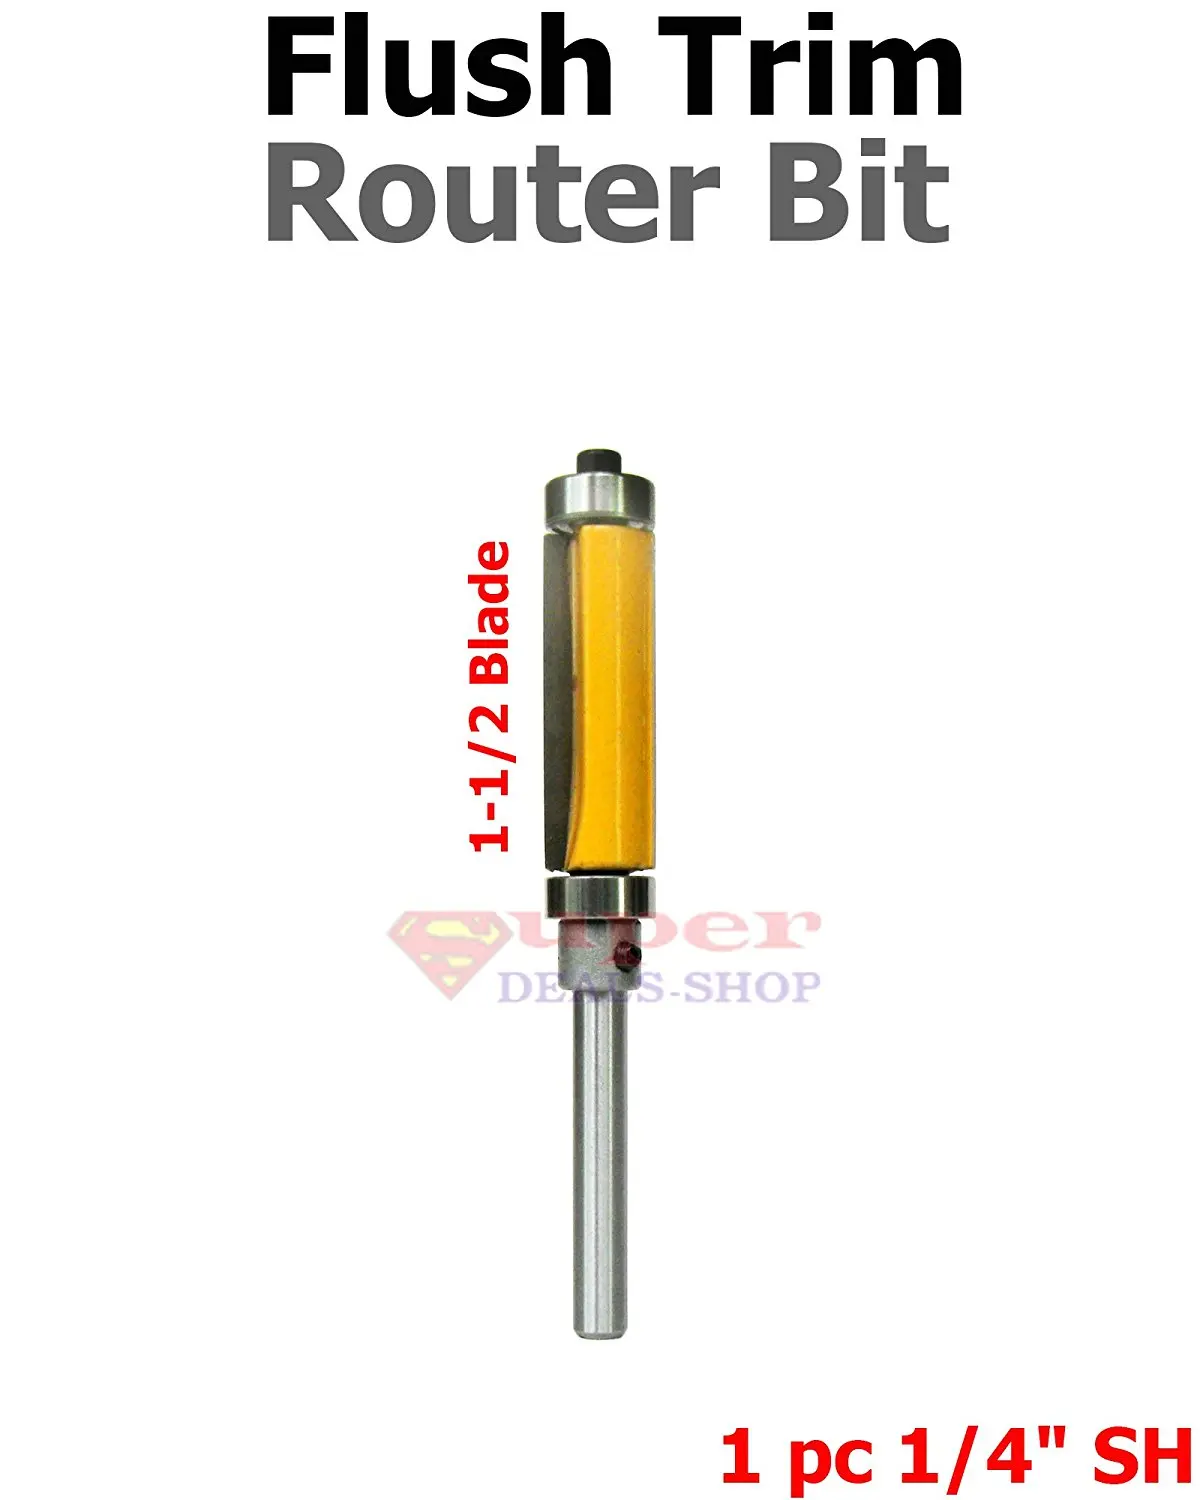 Router Bits Trim Router Bit Set Top Router Bit Set Flush Trim Router Bit Set Flush Pattern Trim Router Bit Set 4 Pcs 1//4 Shank Super-Deals-Shop